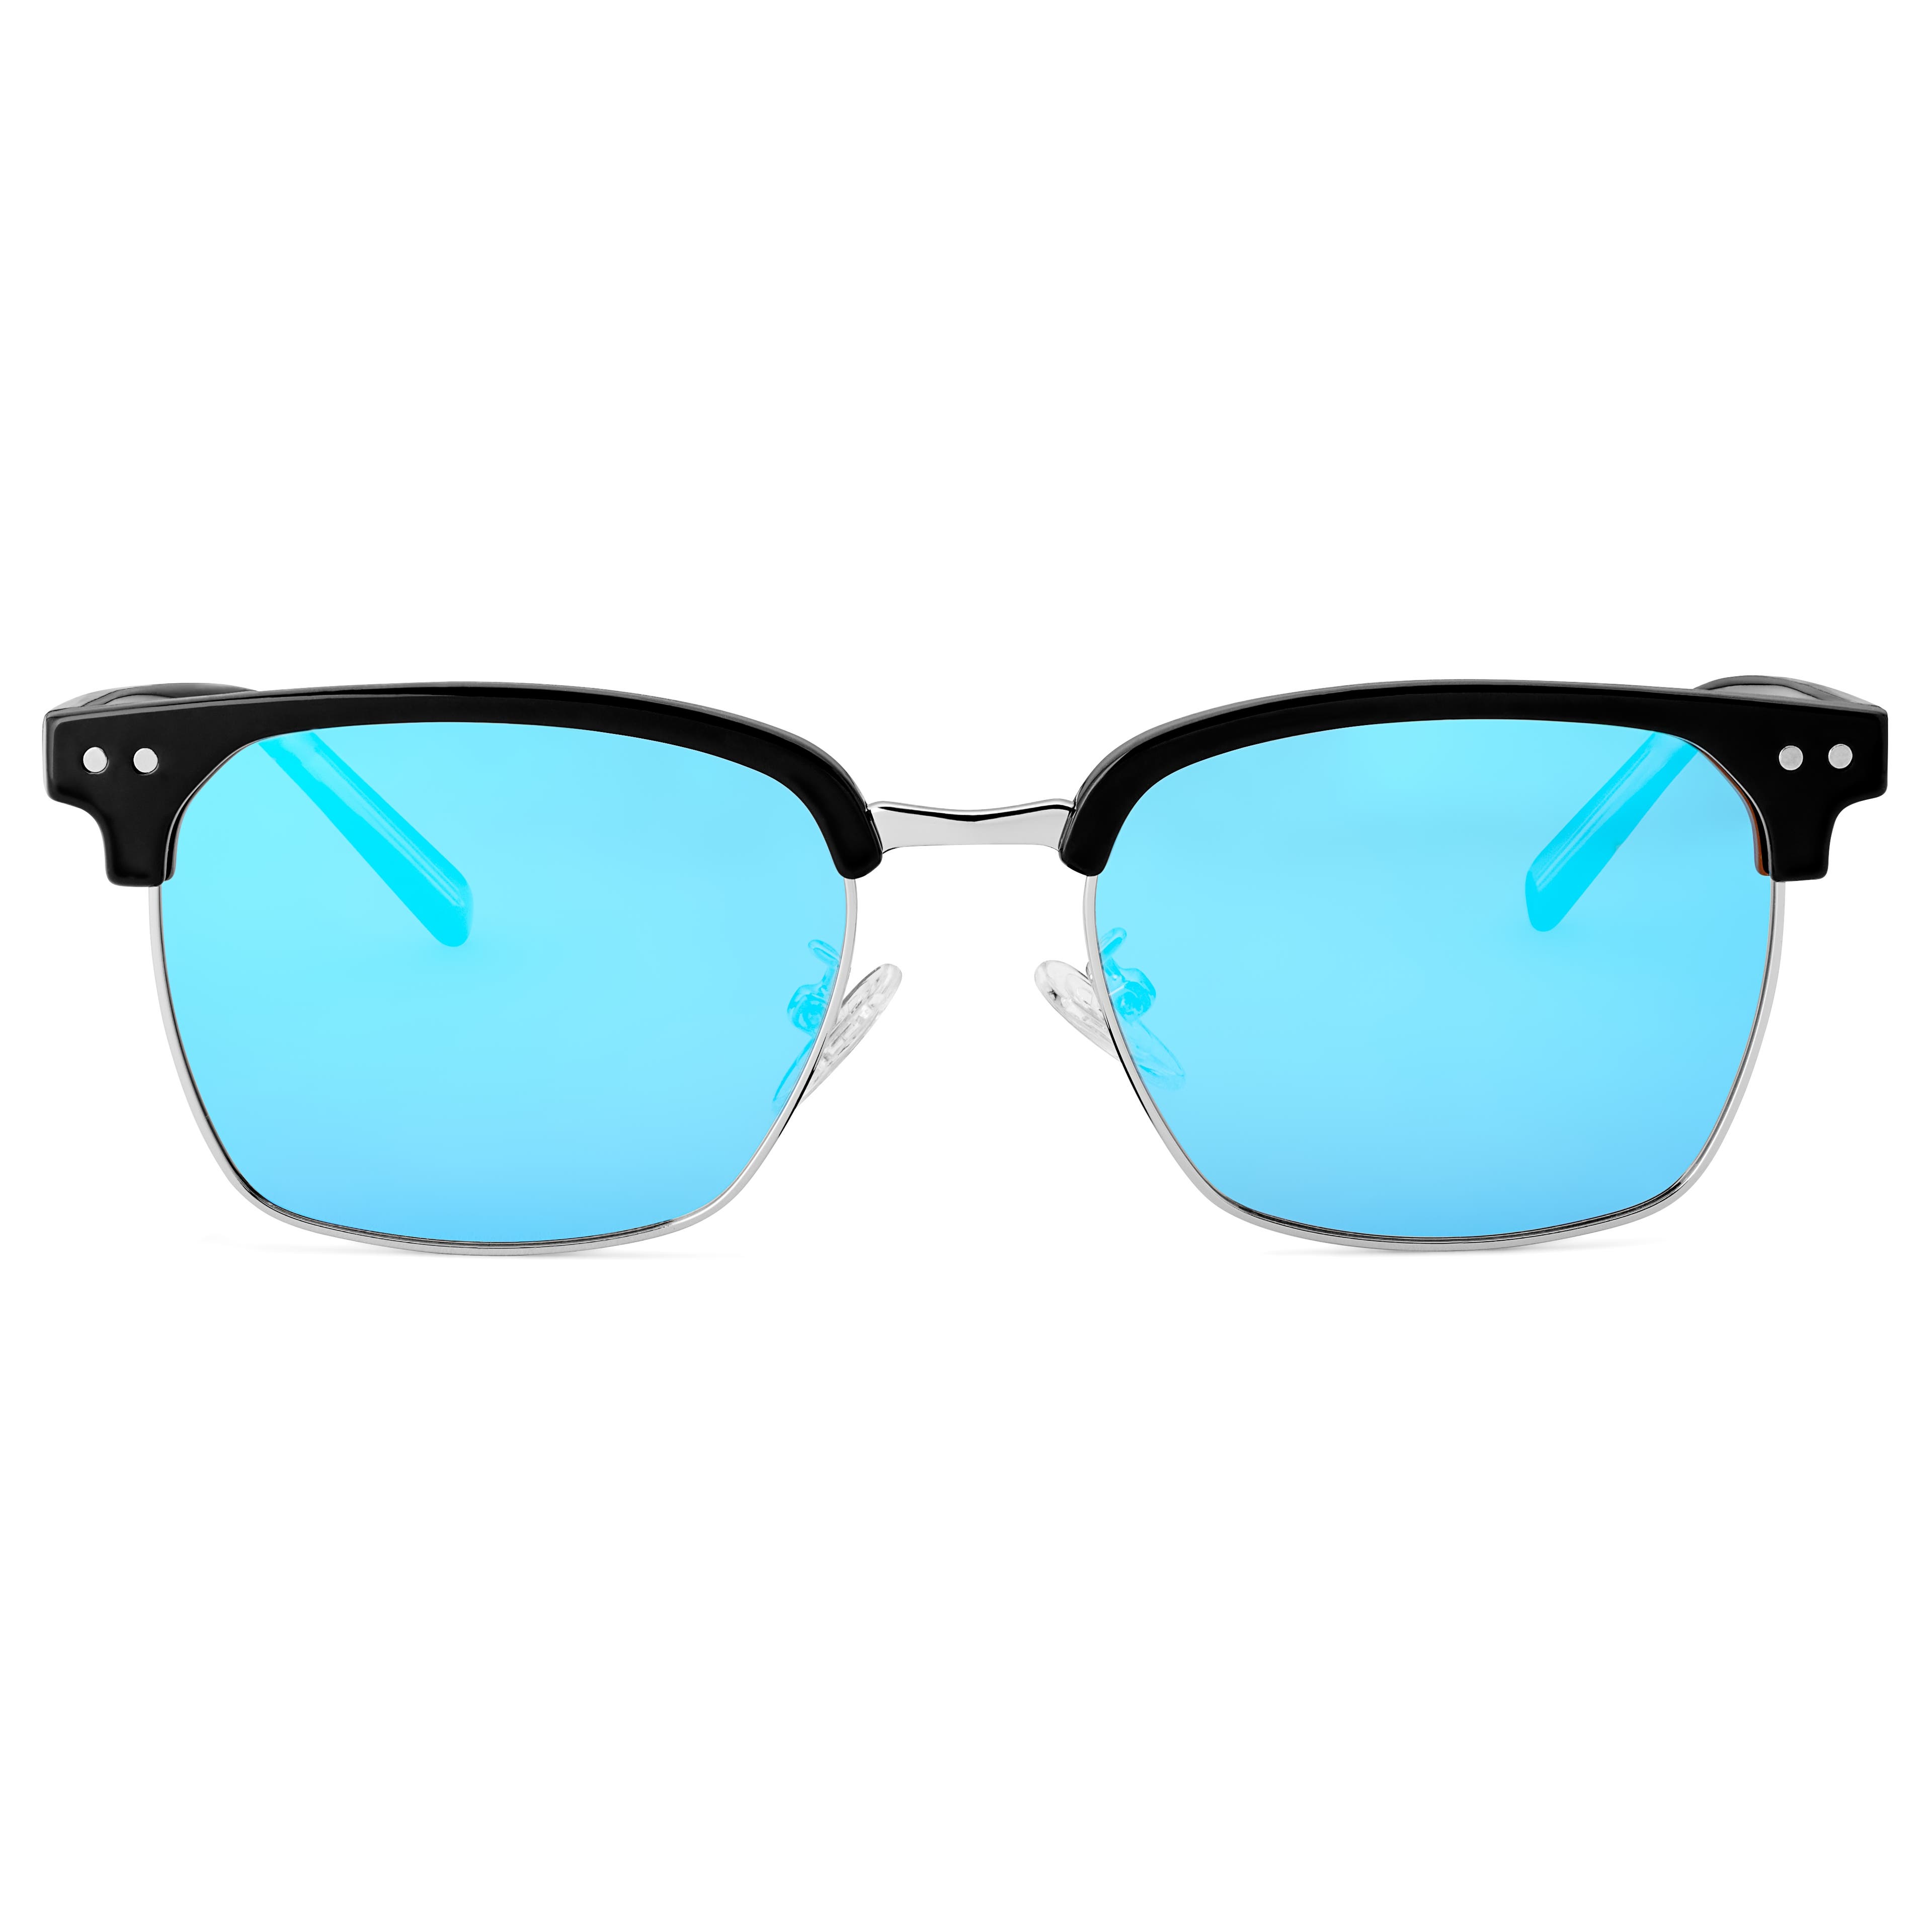 Black & Blue Stainless Steel Polarised Sunglasses